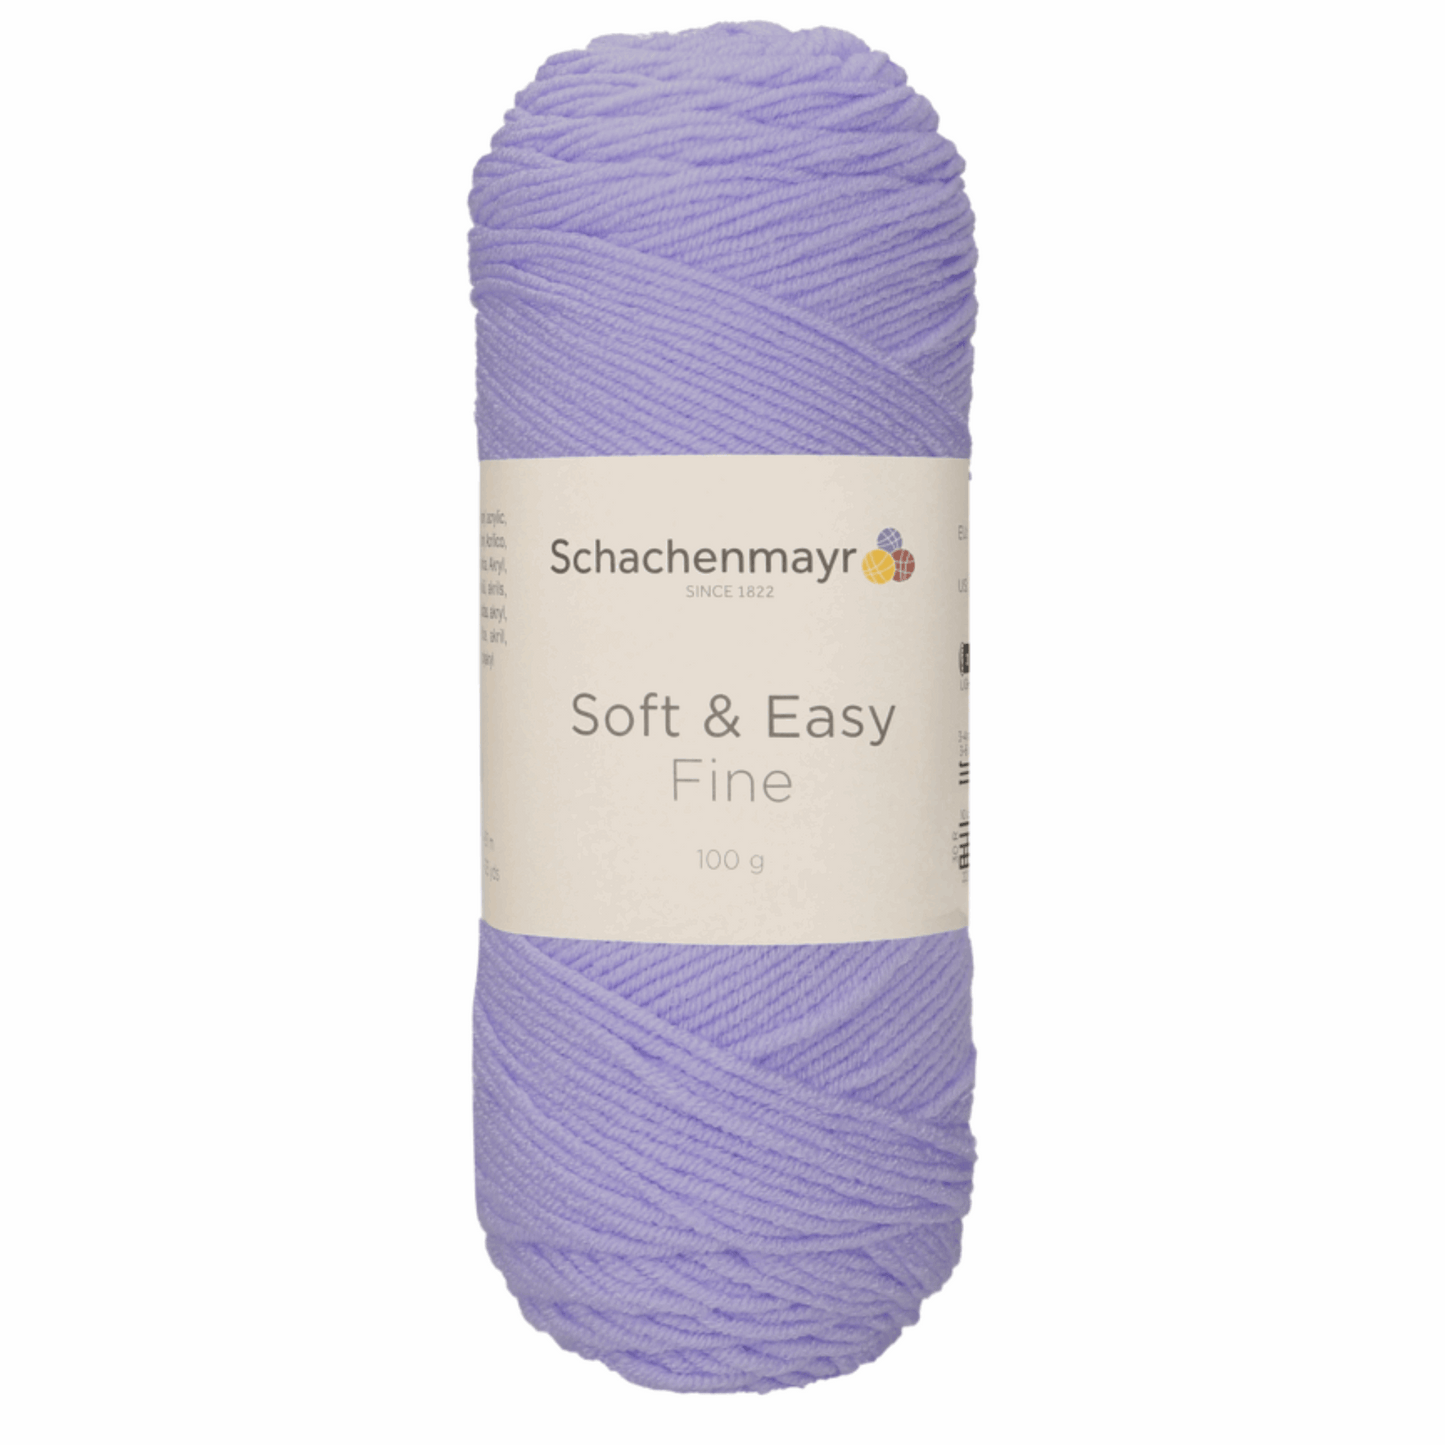 Schachenmayr Soft & Easy Fine 100g, 90402, Farbe Flieder 45